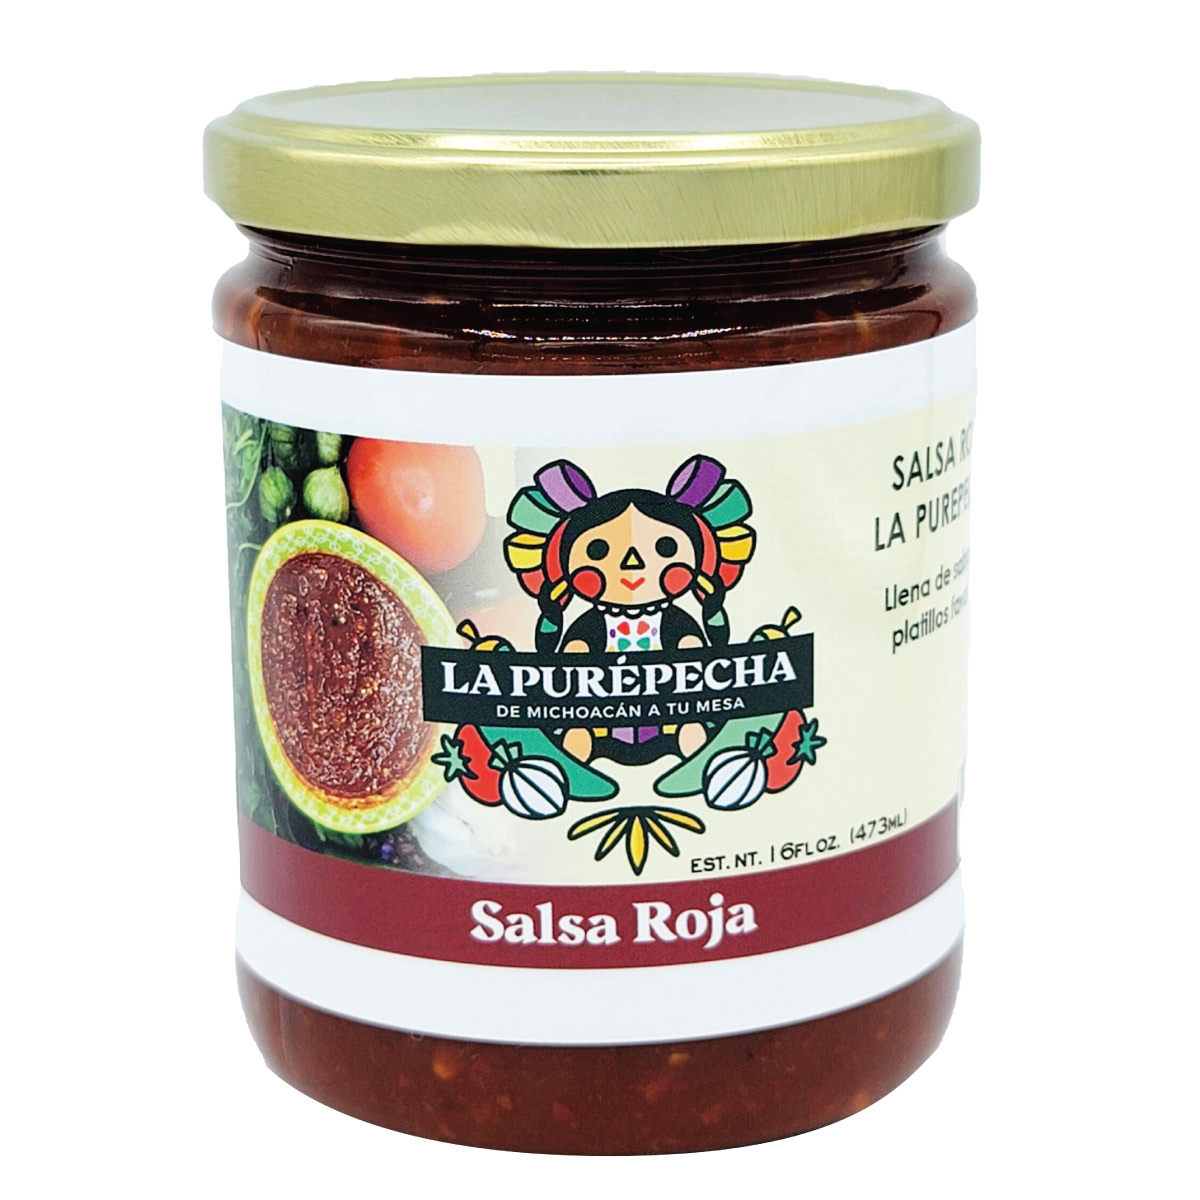 Sauce - Salsa Verde - Salsa Roja - La Purepecha